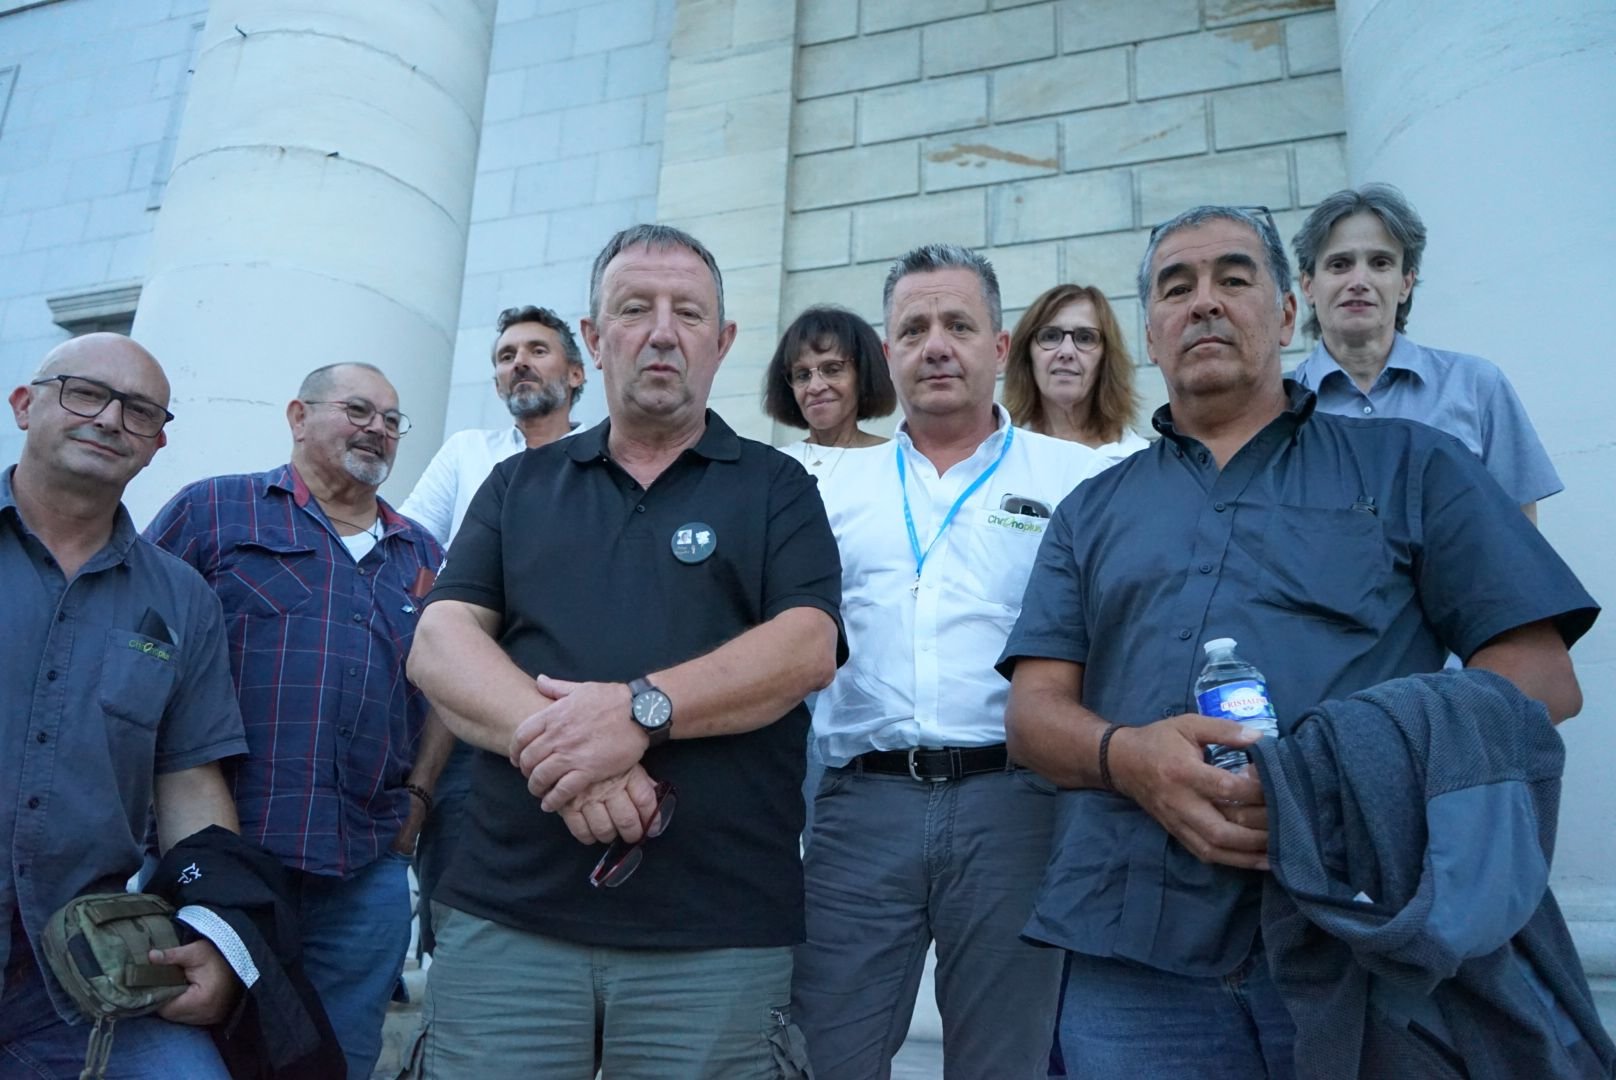 Les collègues du chauffeur de bus tué à Bayonne en juillet 2020, mercredi soir, devant la Cour d'Assises des Pyrénées-Atlantiques de Pau. LP/Klervi Le Cozic